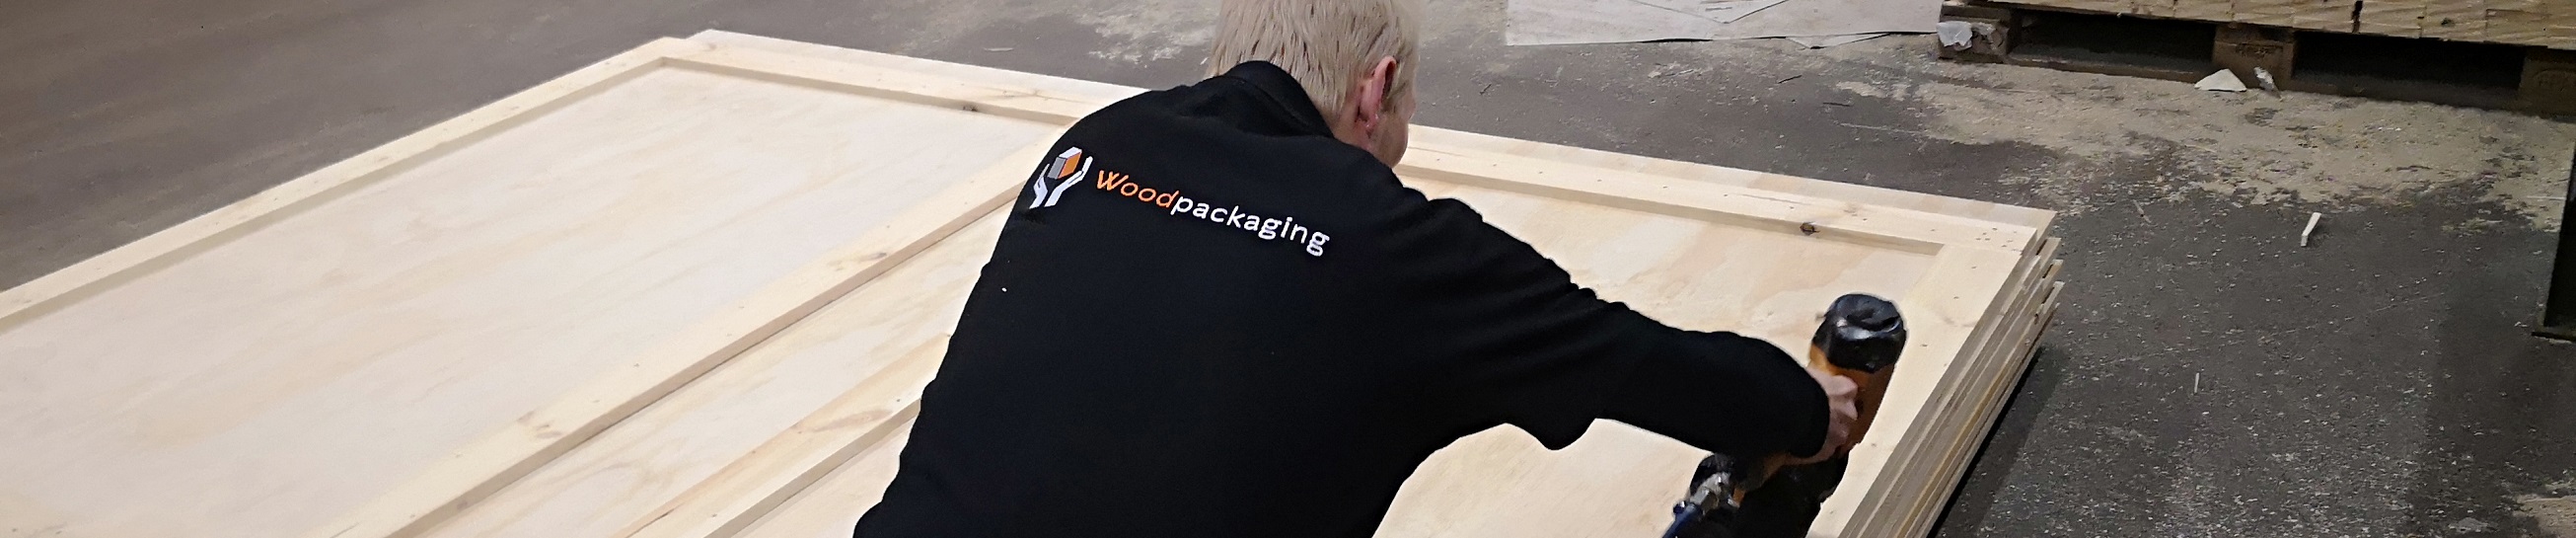 Woodpackaging